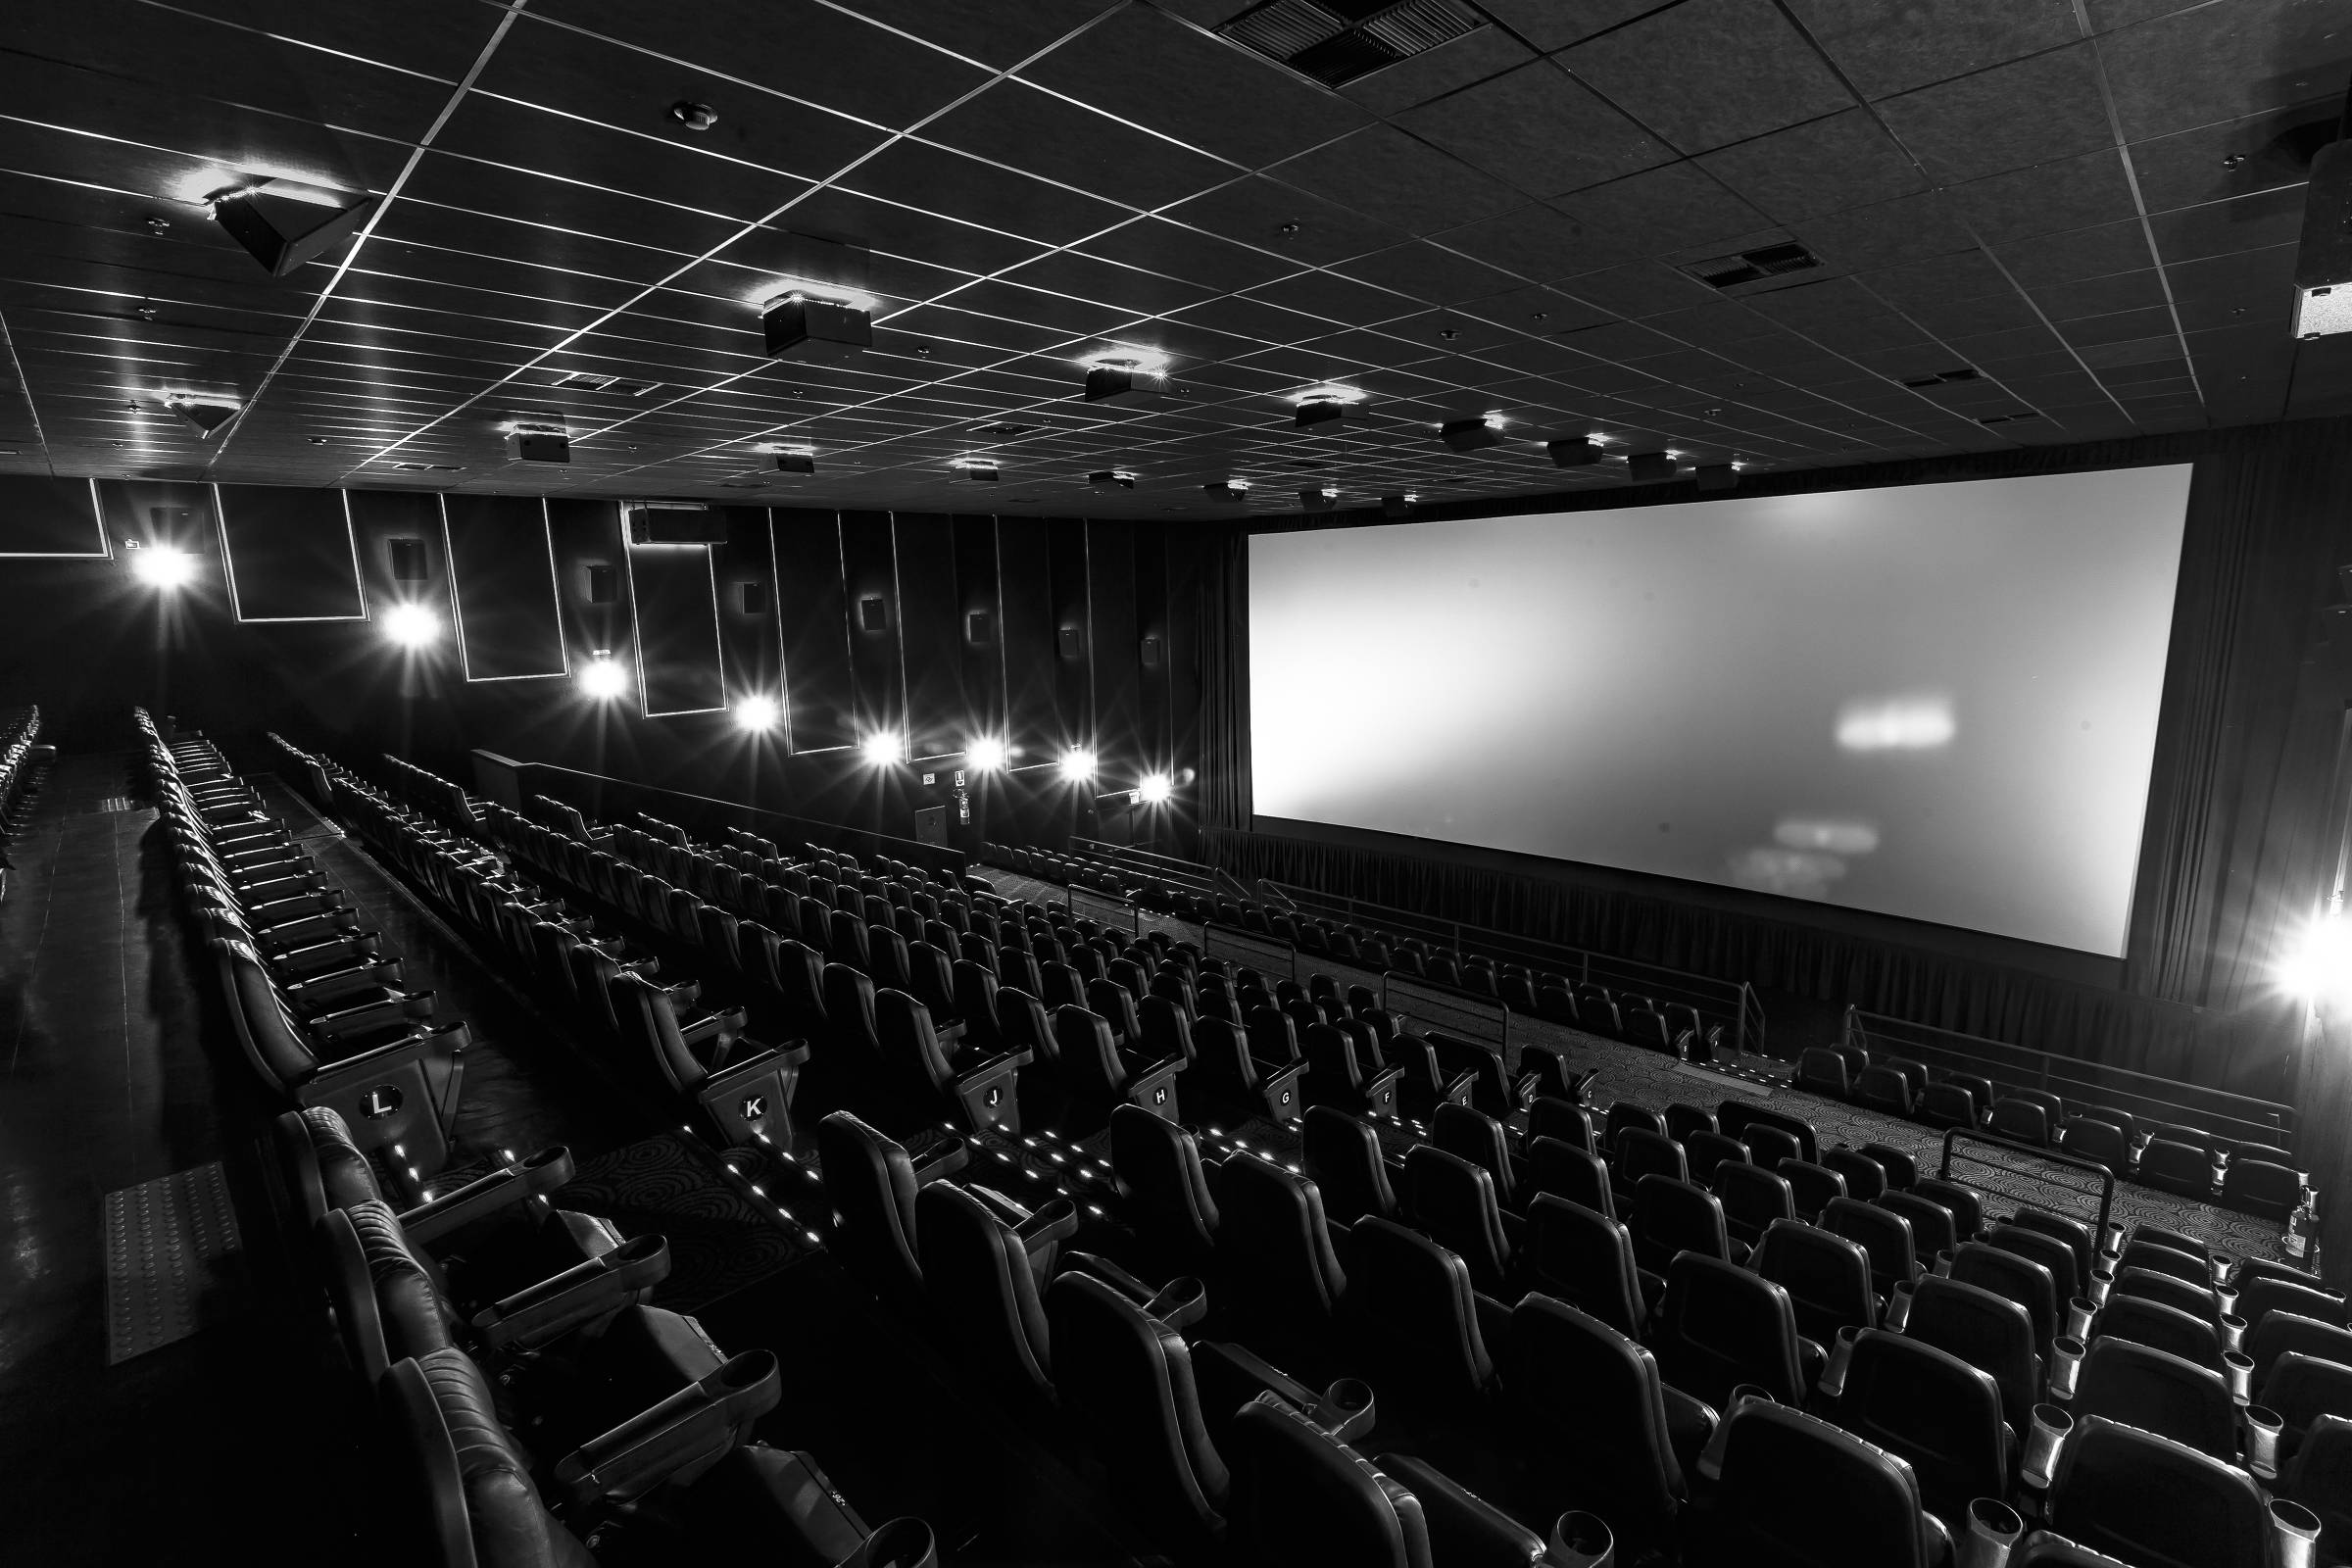 Promoção cinema: rede oferta ingressos a R$ 12 para terror